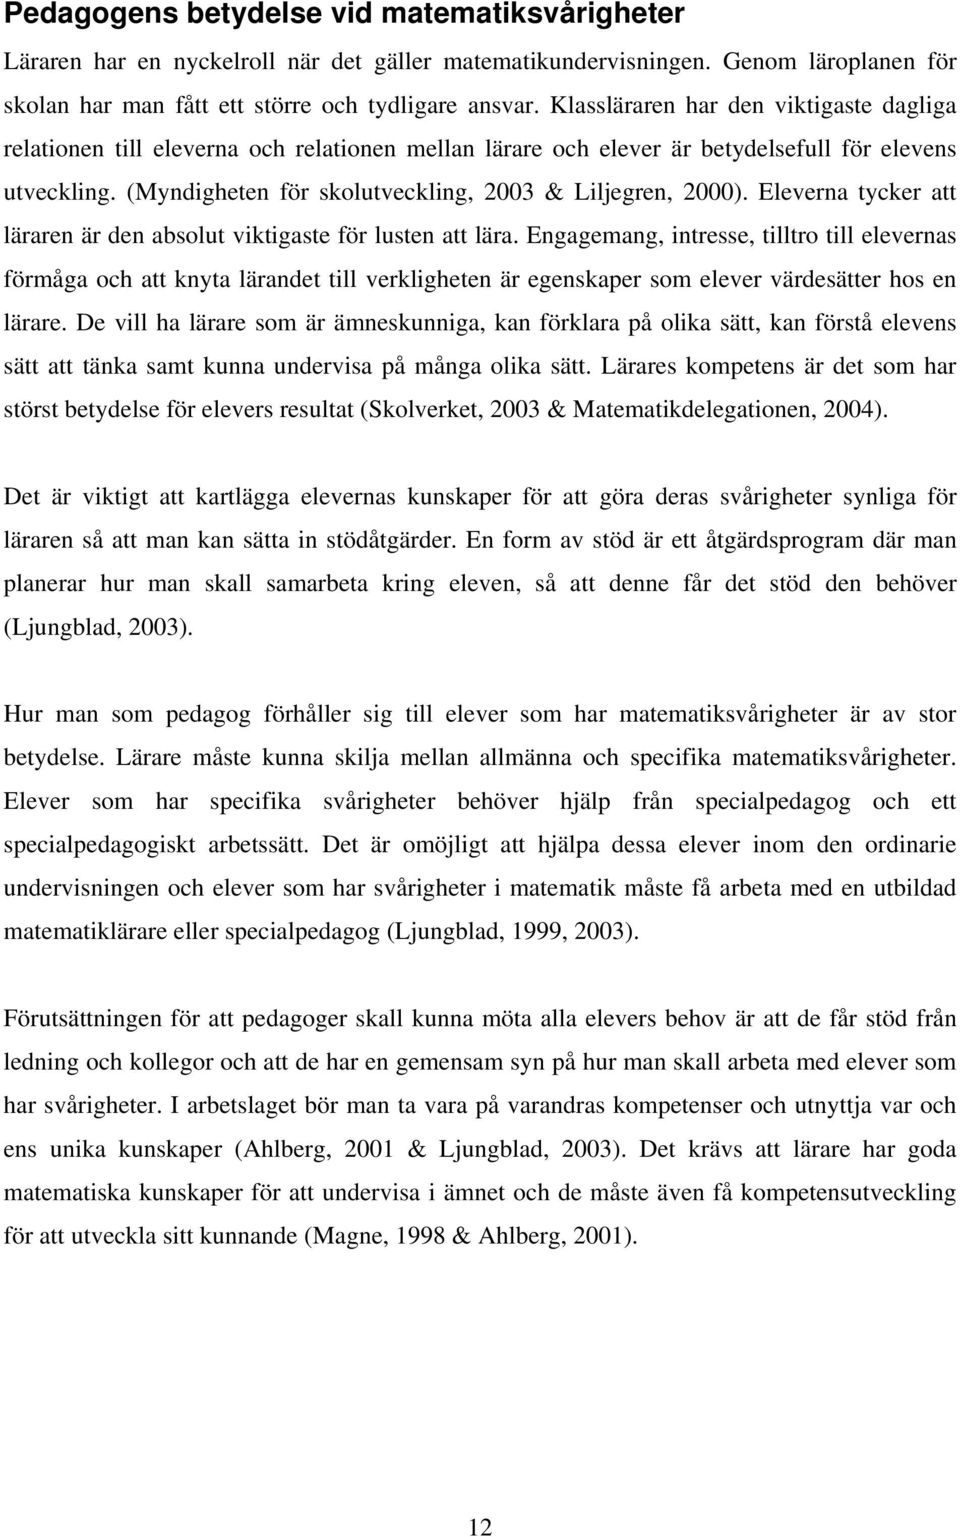 (Myndigheten för skolutveckling, 2003 & Liljegren, 2000). Eleverna tycker att läraren är den absolut viktigaste för lusten att lära.